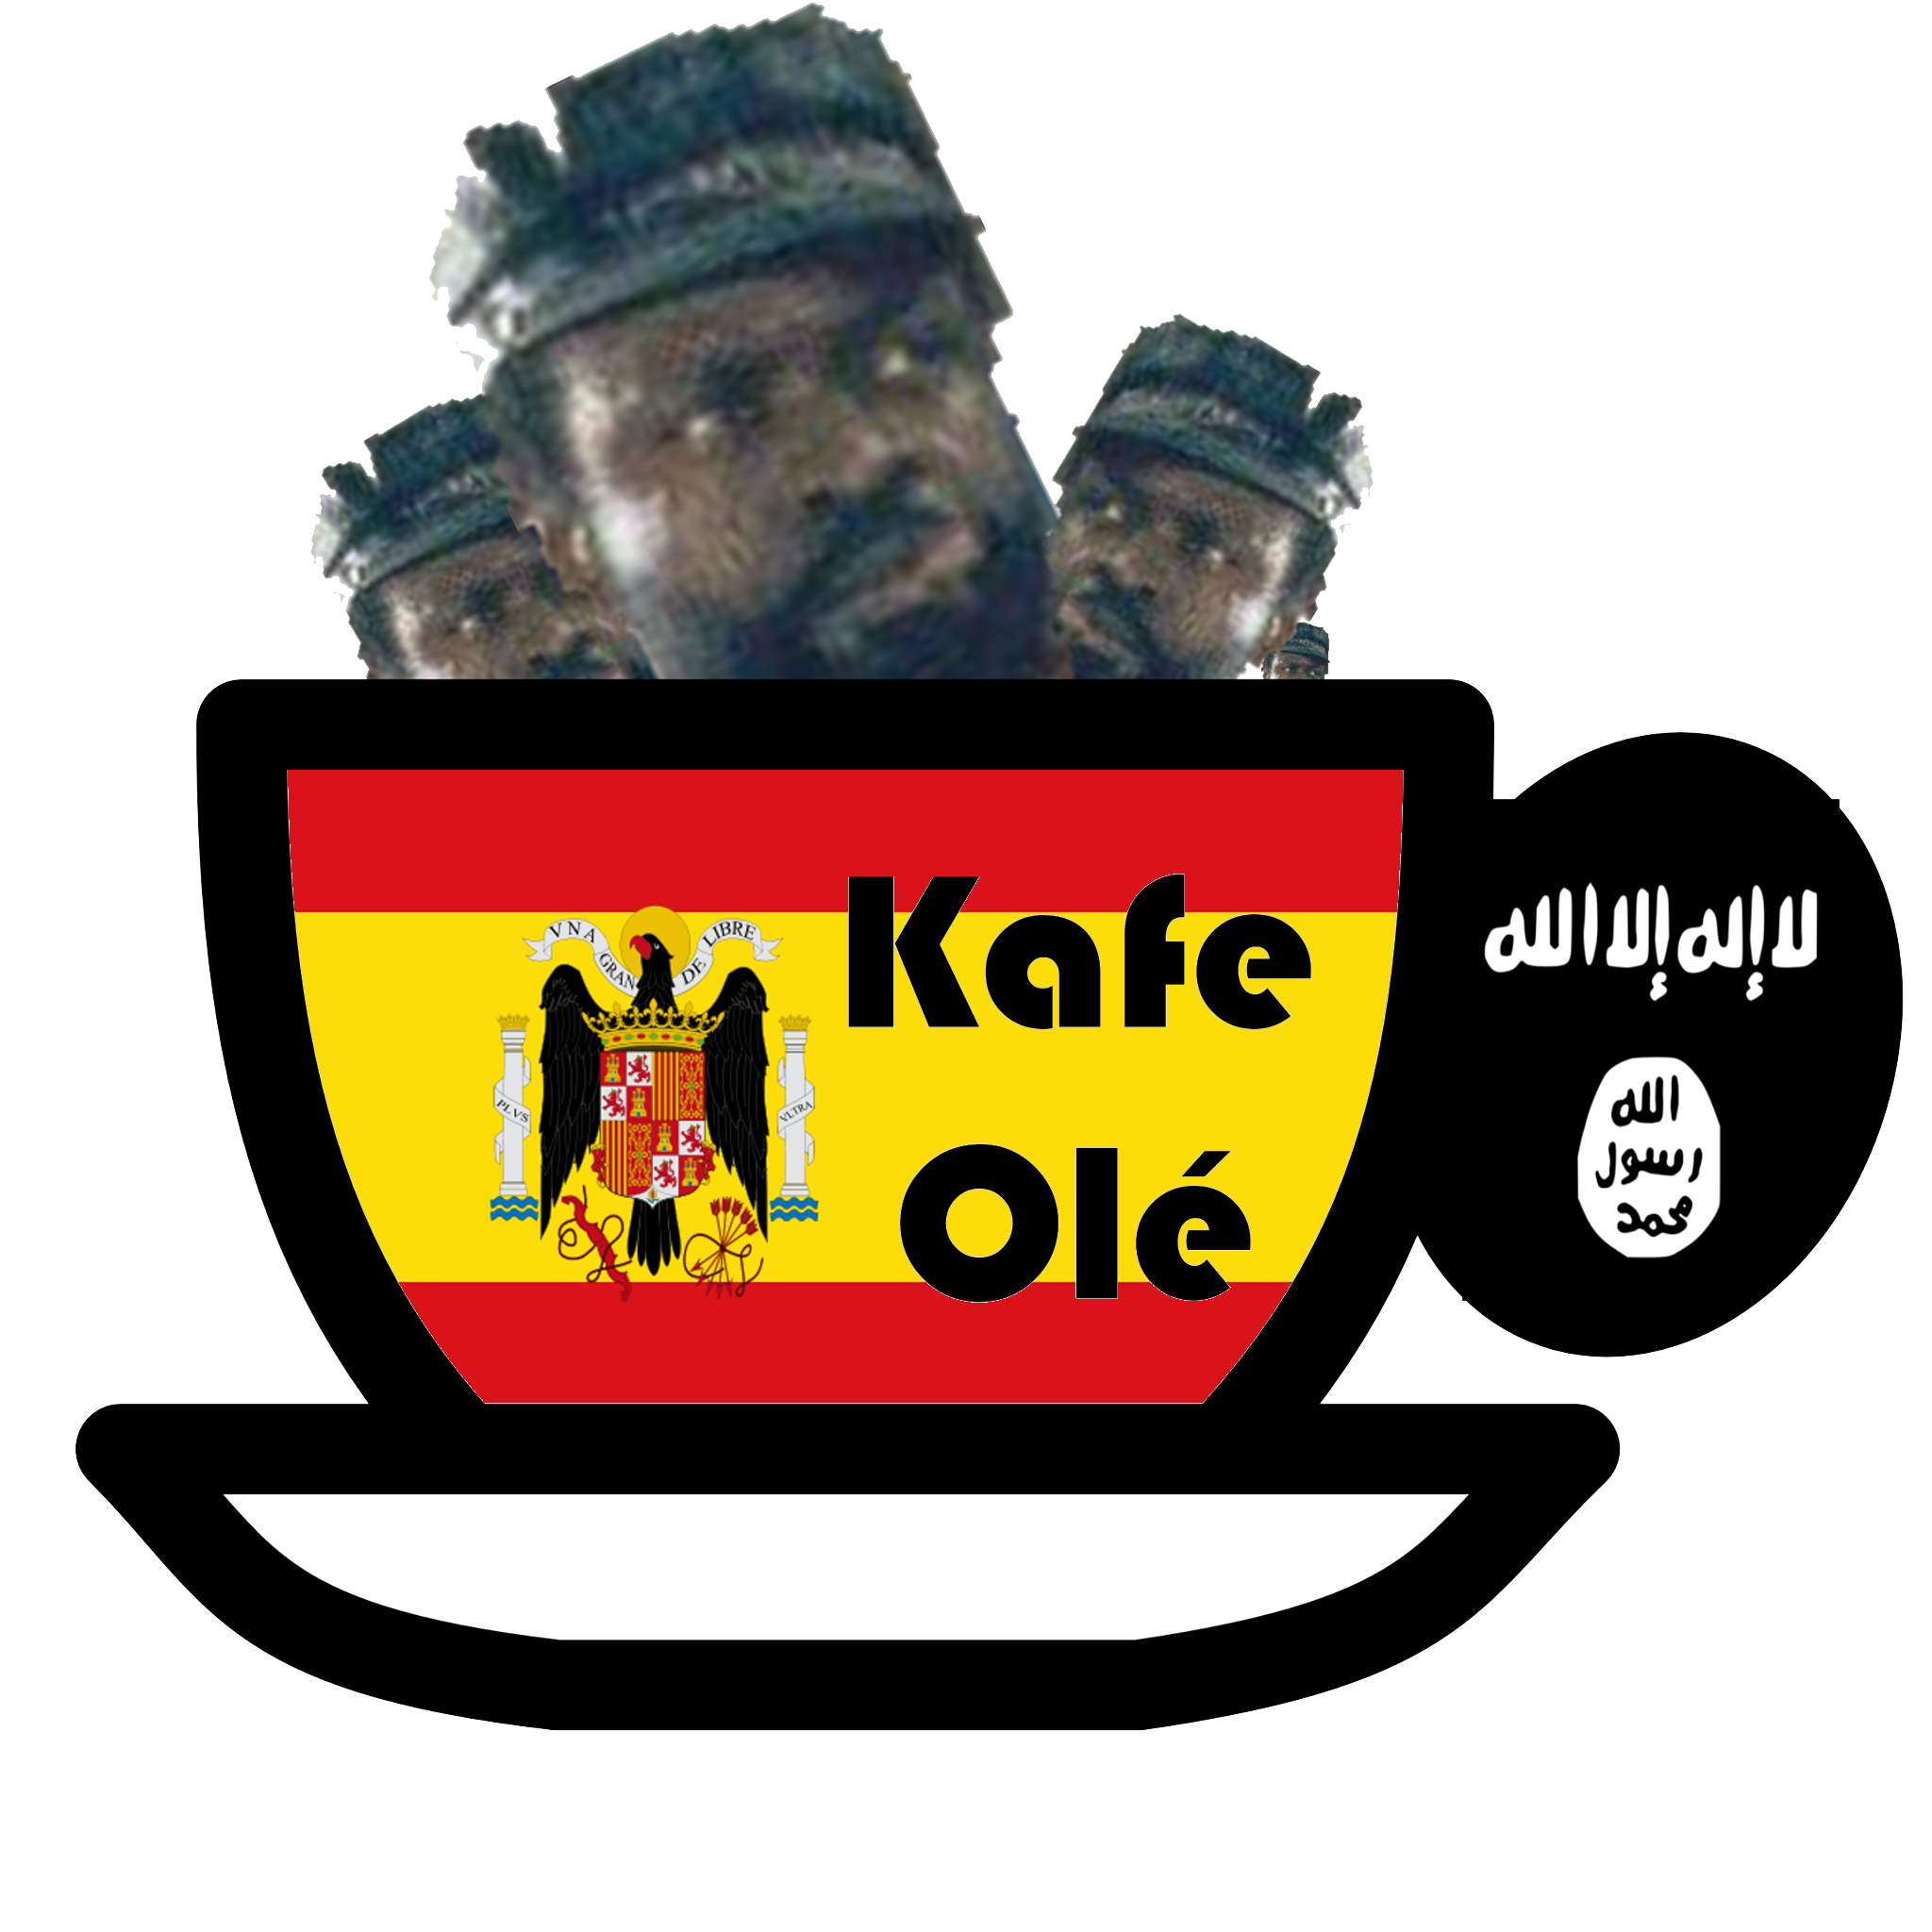 Kafe Ole – 2014/12/06